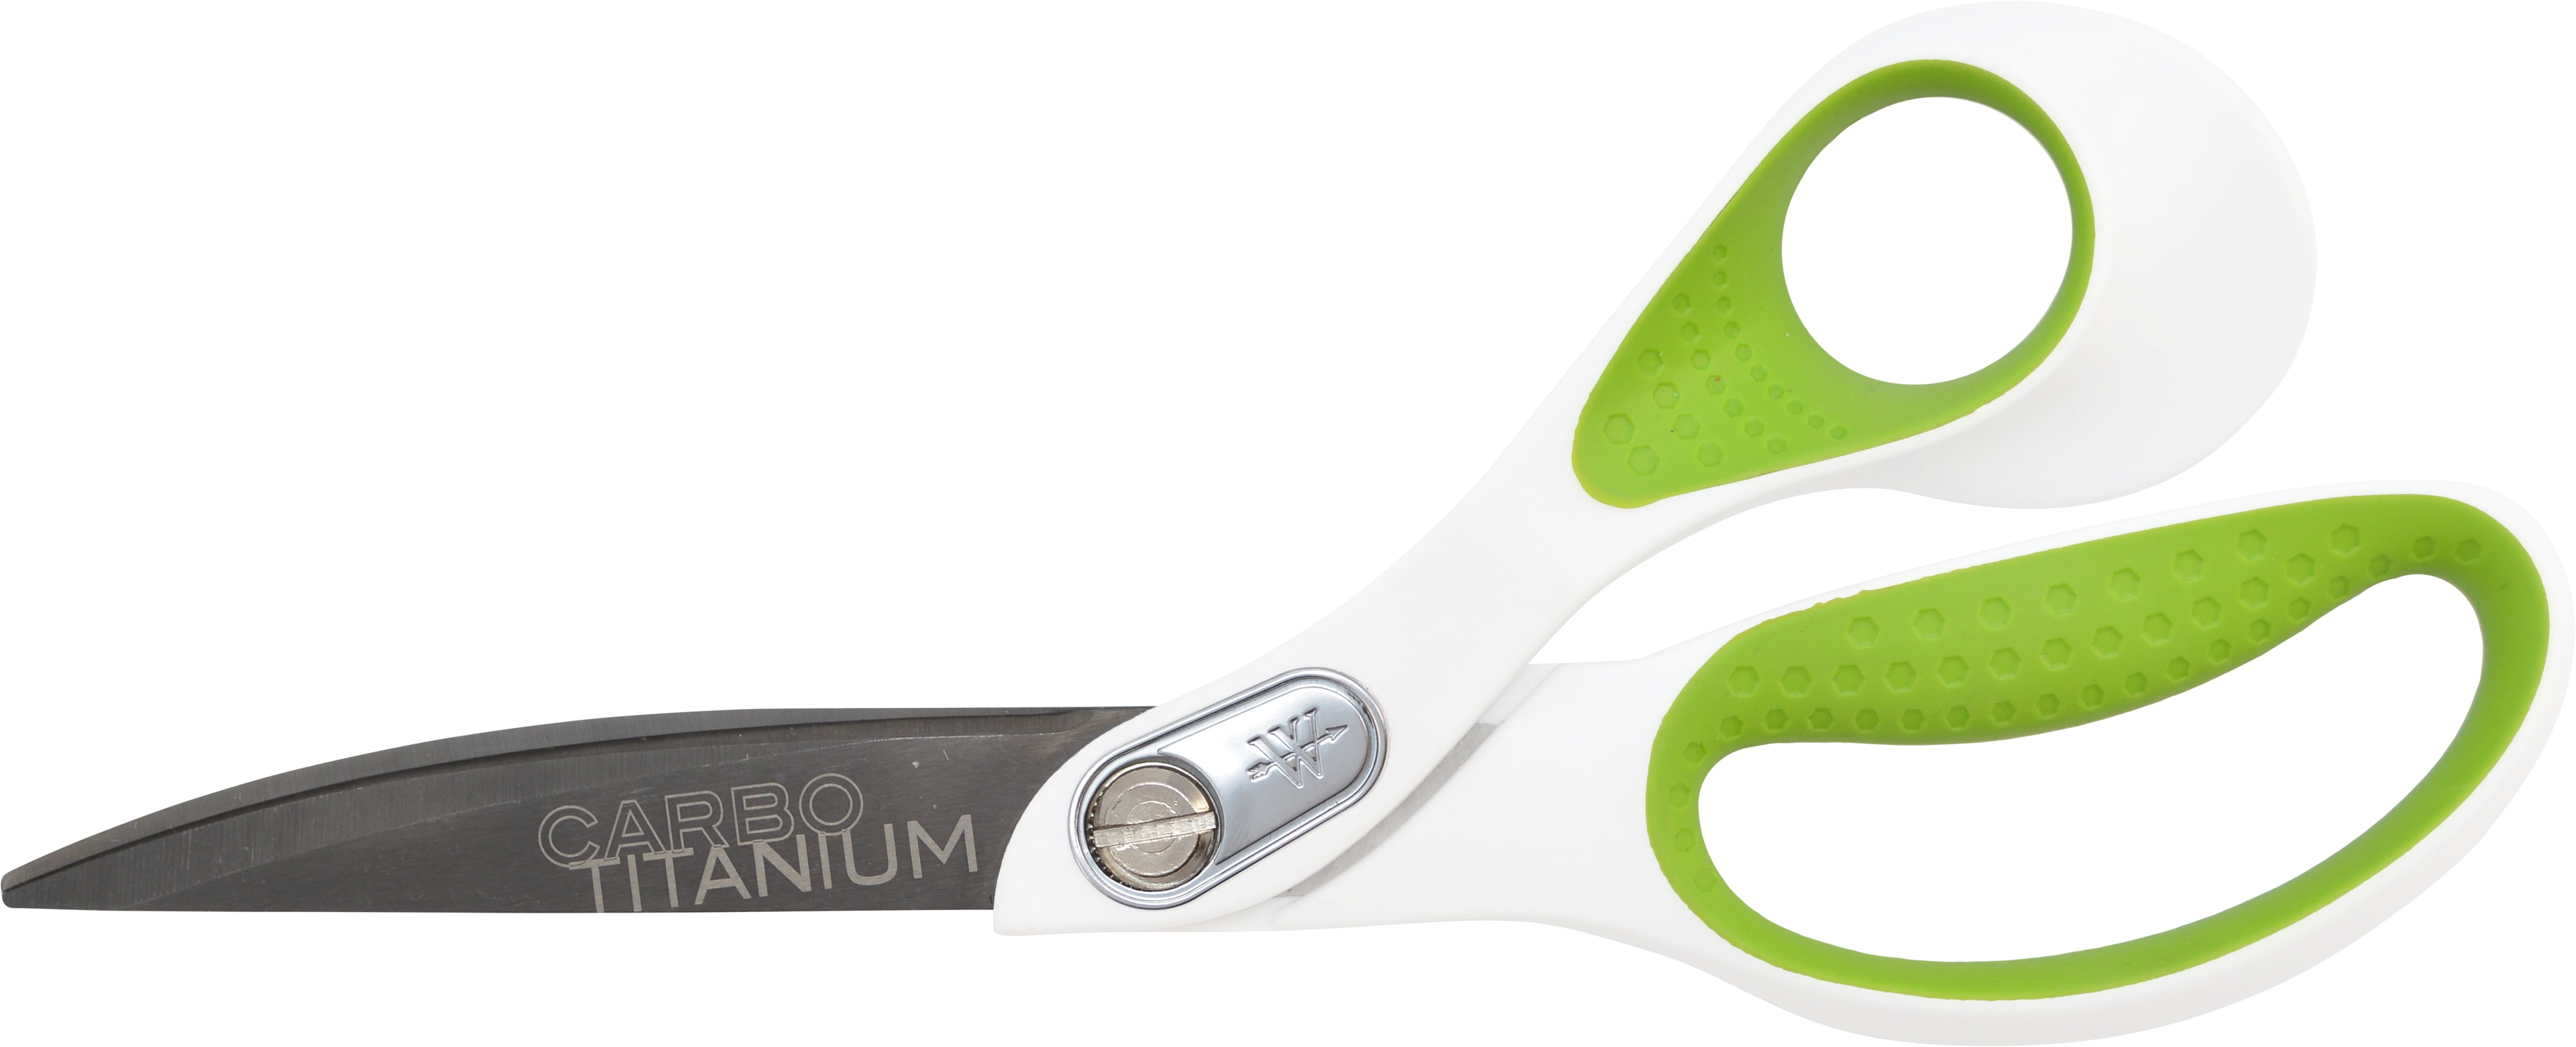 titanium sewing scissors